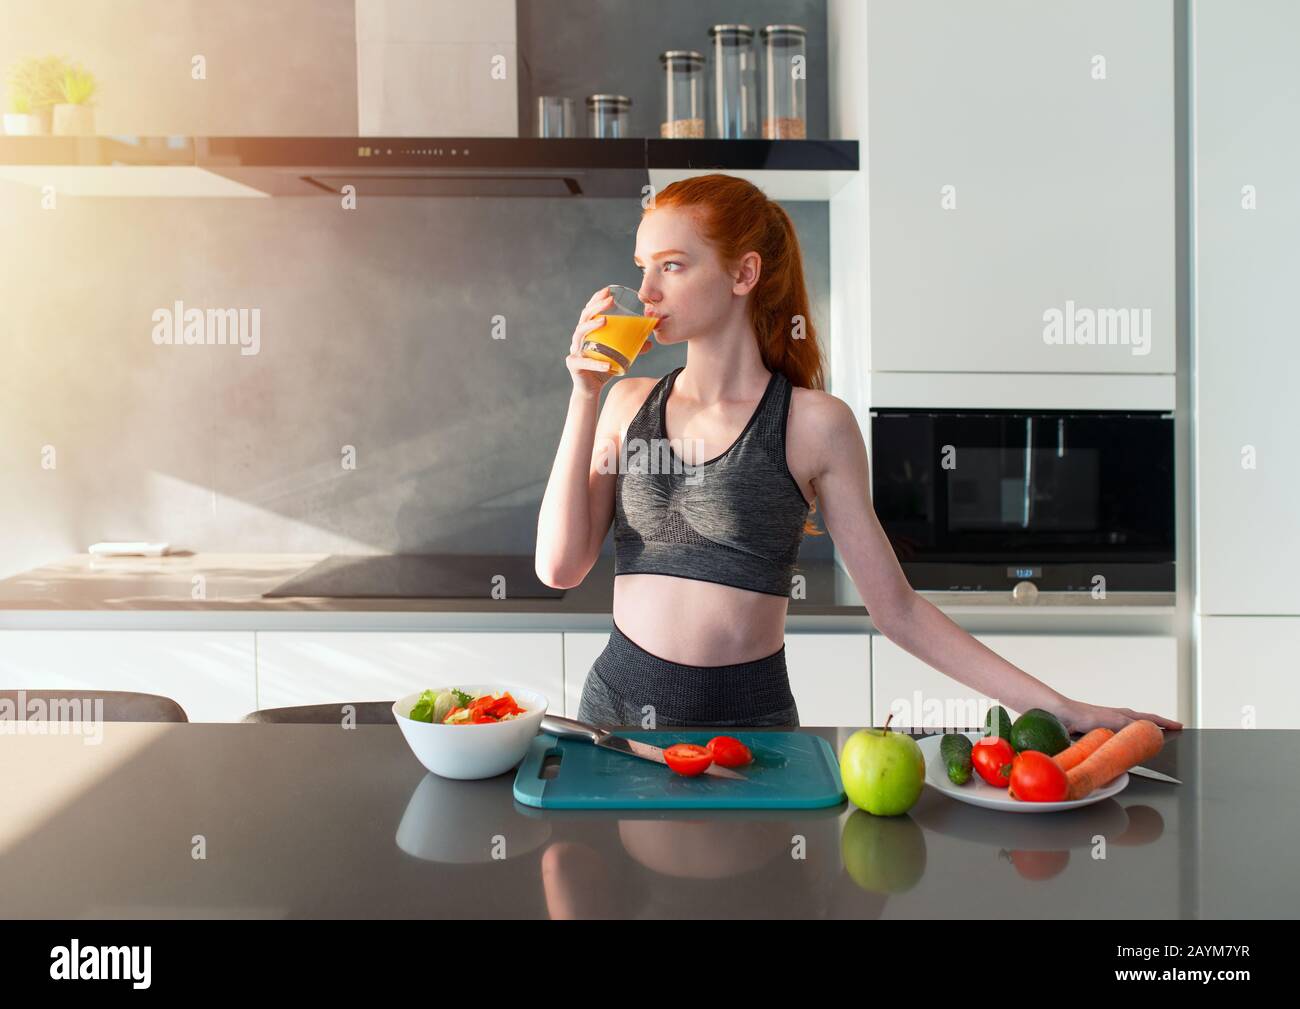 Sportliches Mädchen mit Turnhallenkleidung isst in der Küche Obst Stockfoto